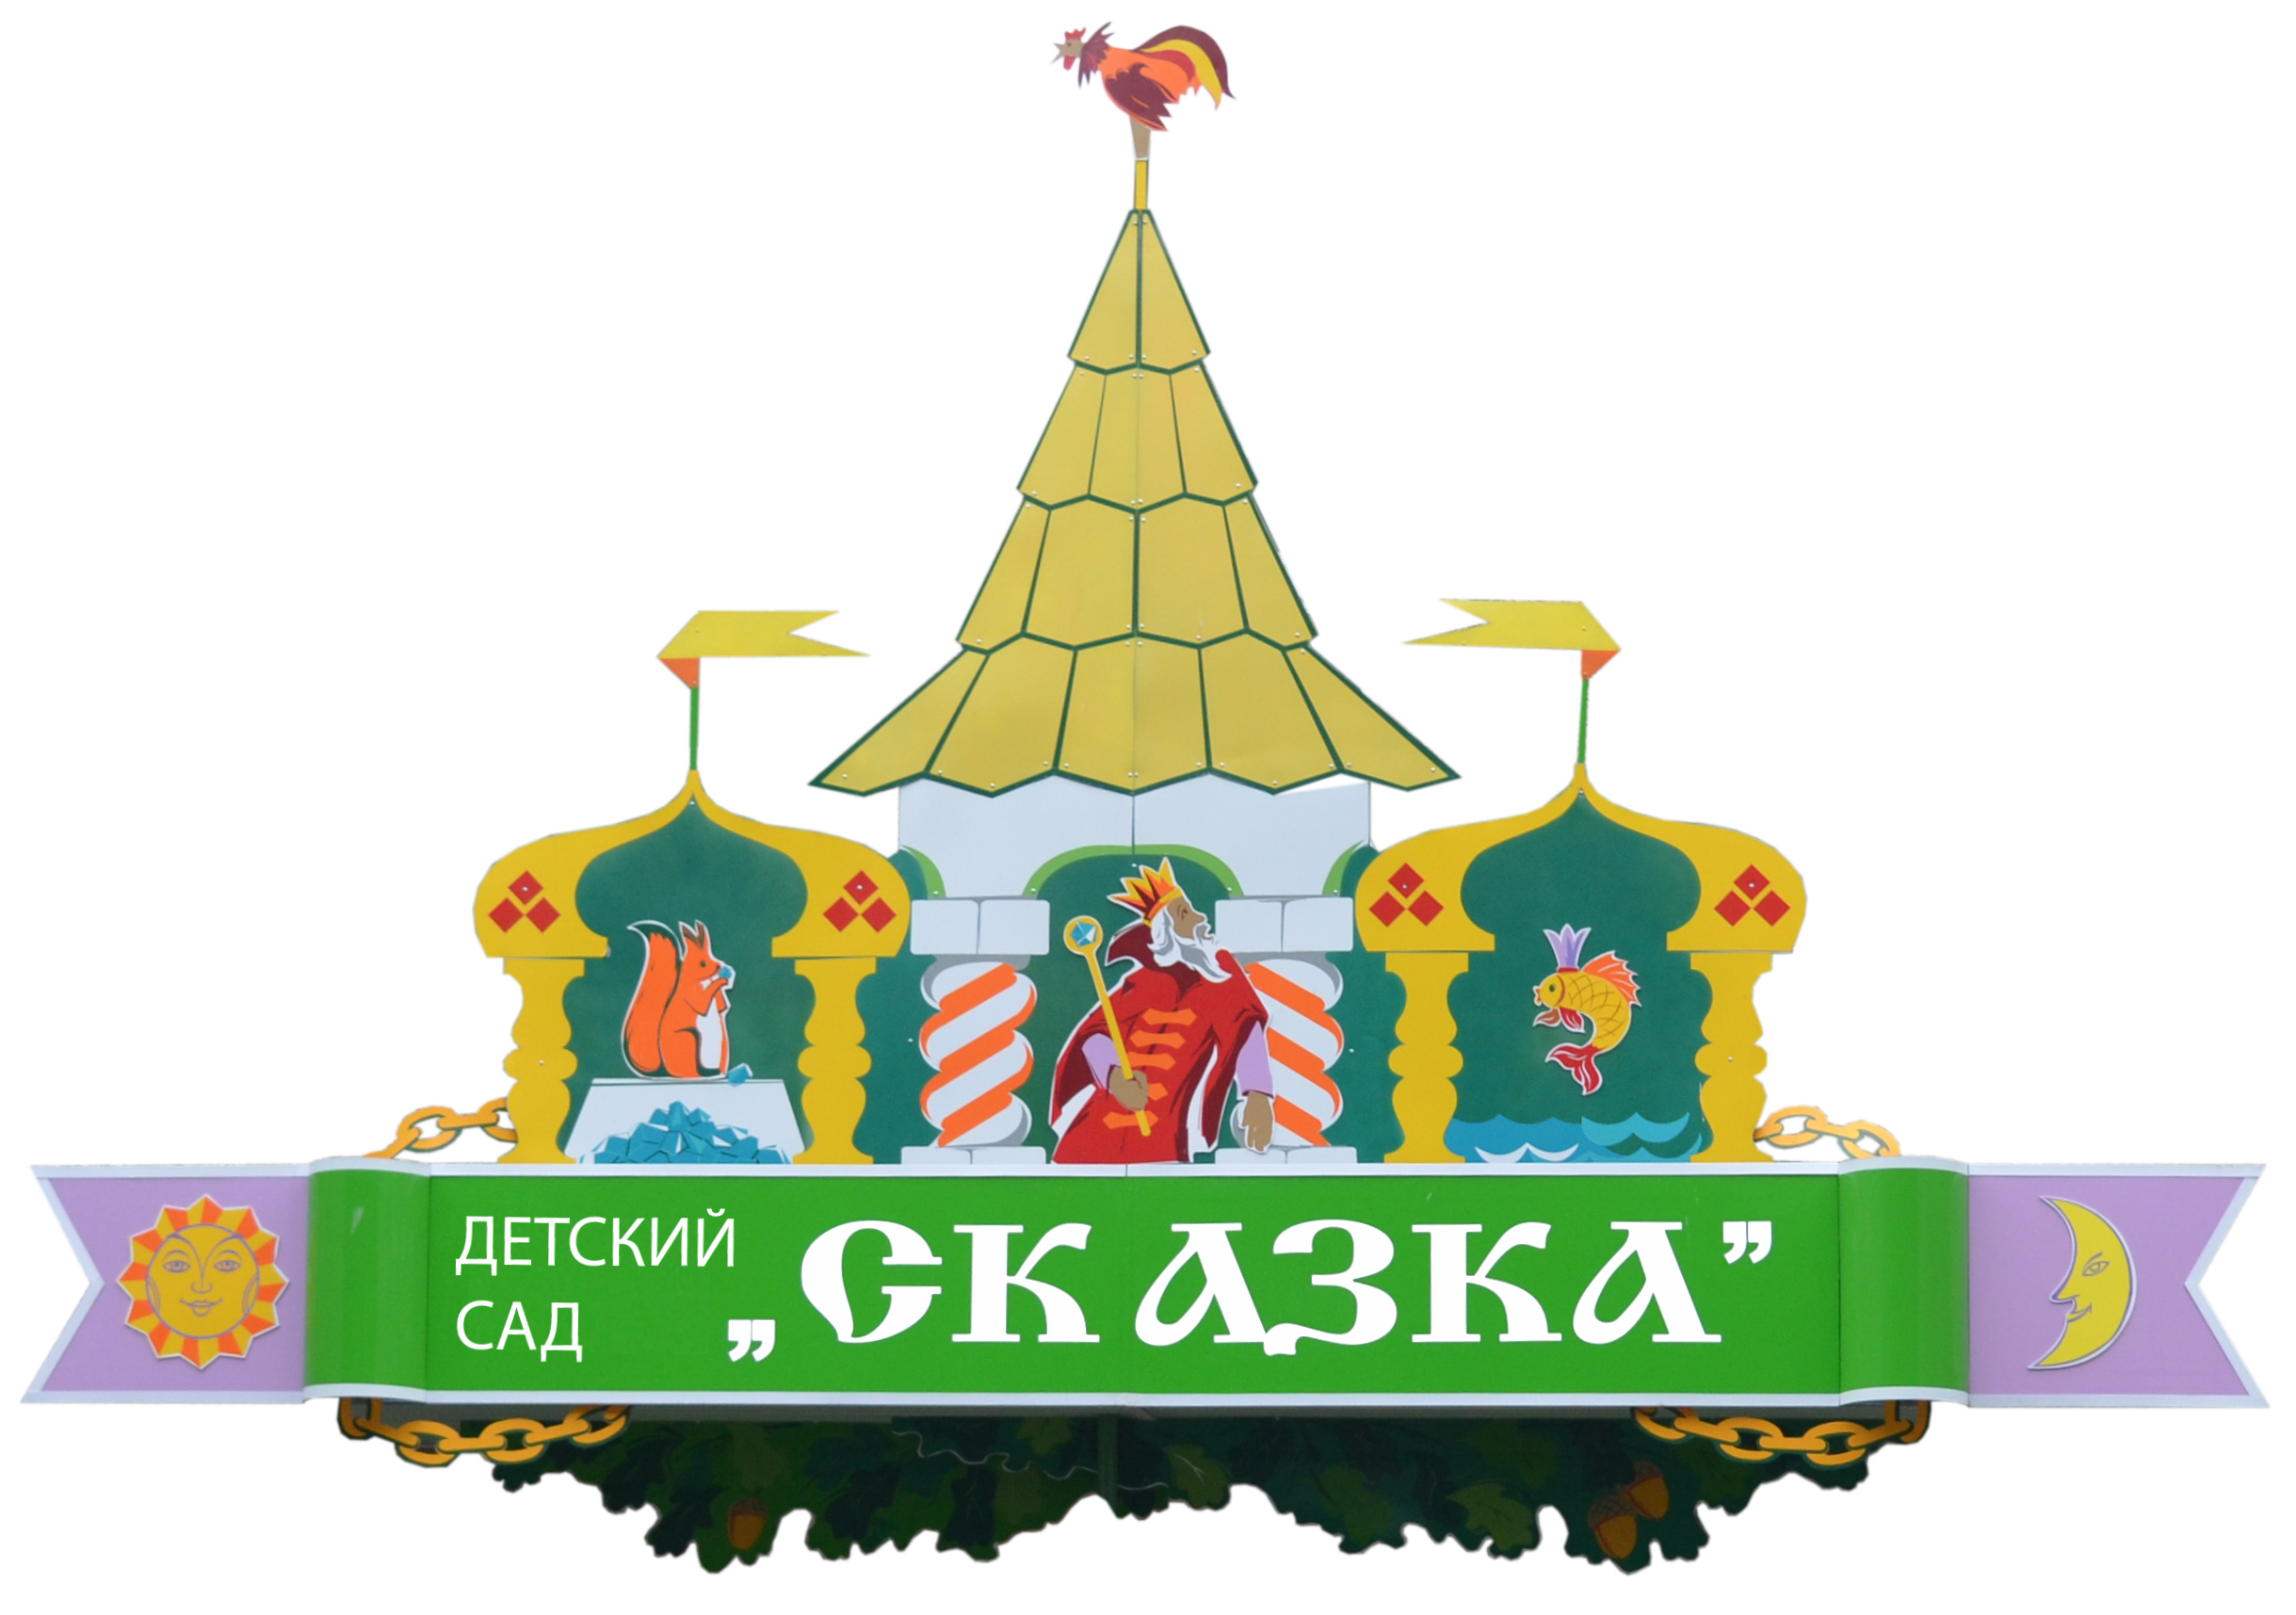 МБДОУ - детский сад "Сказка"